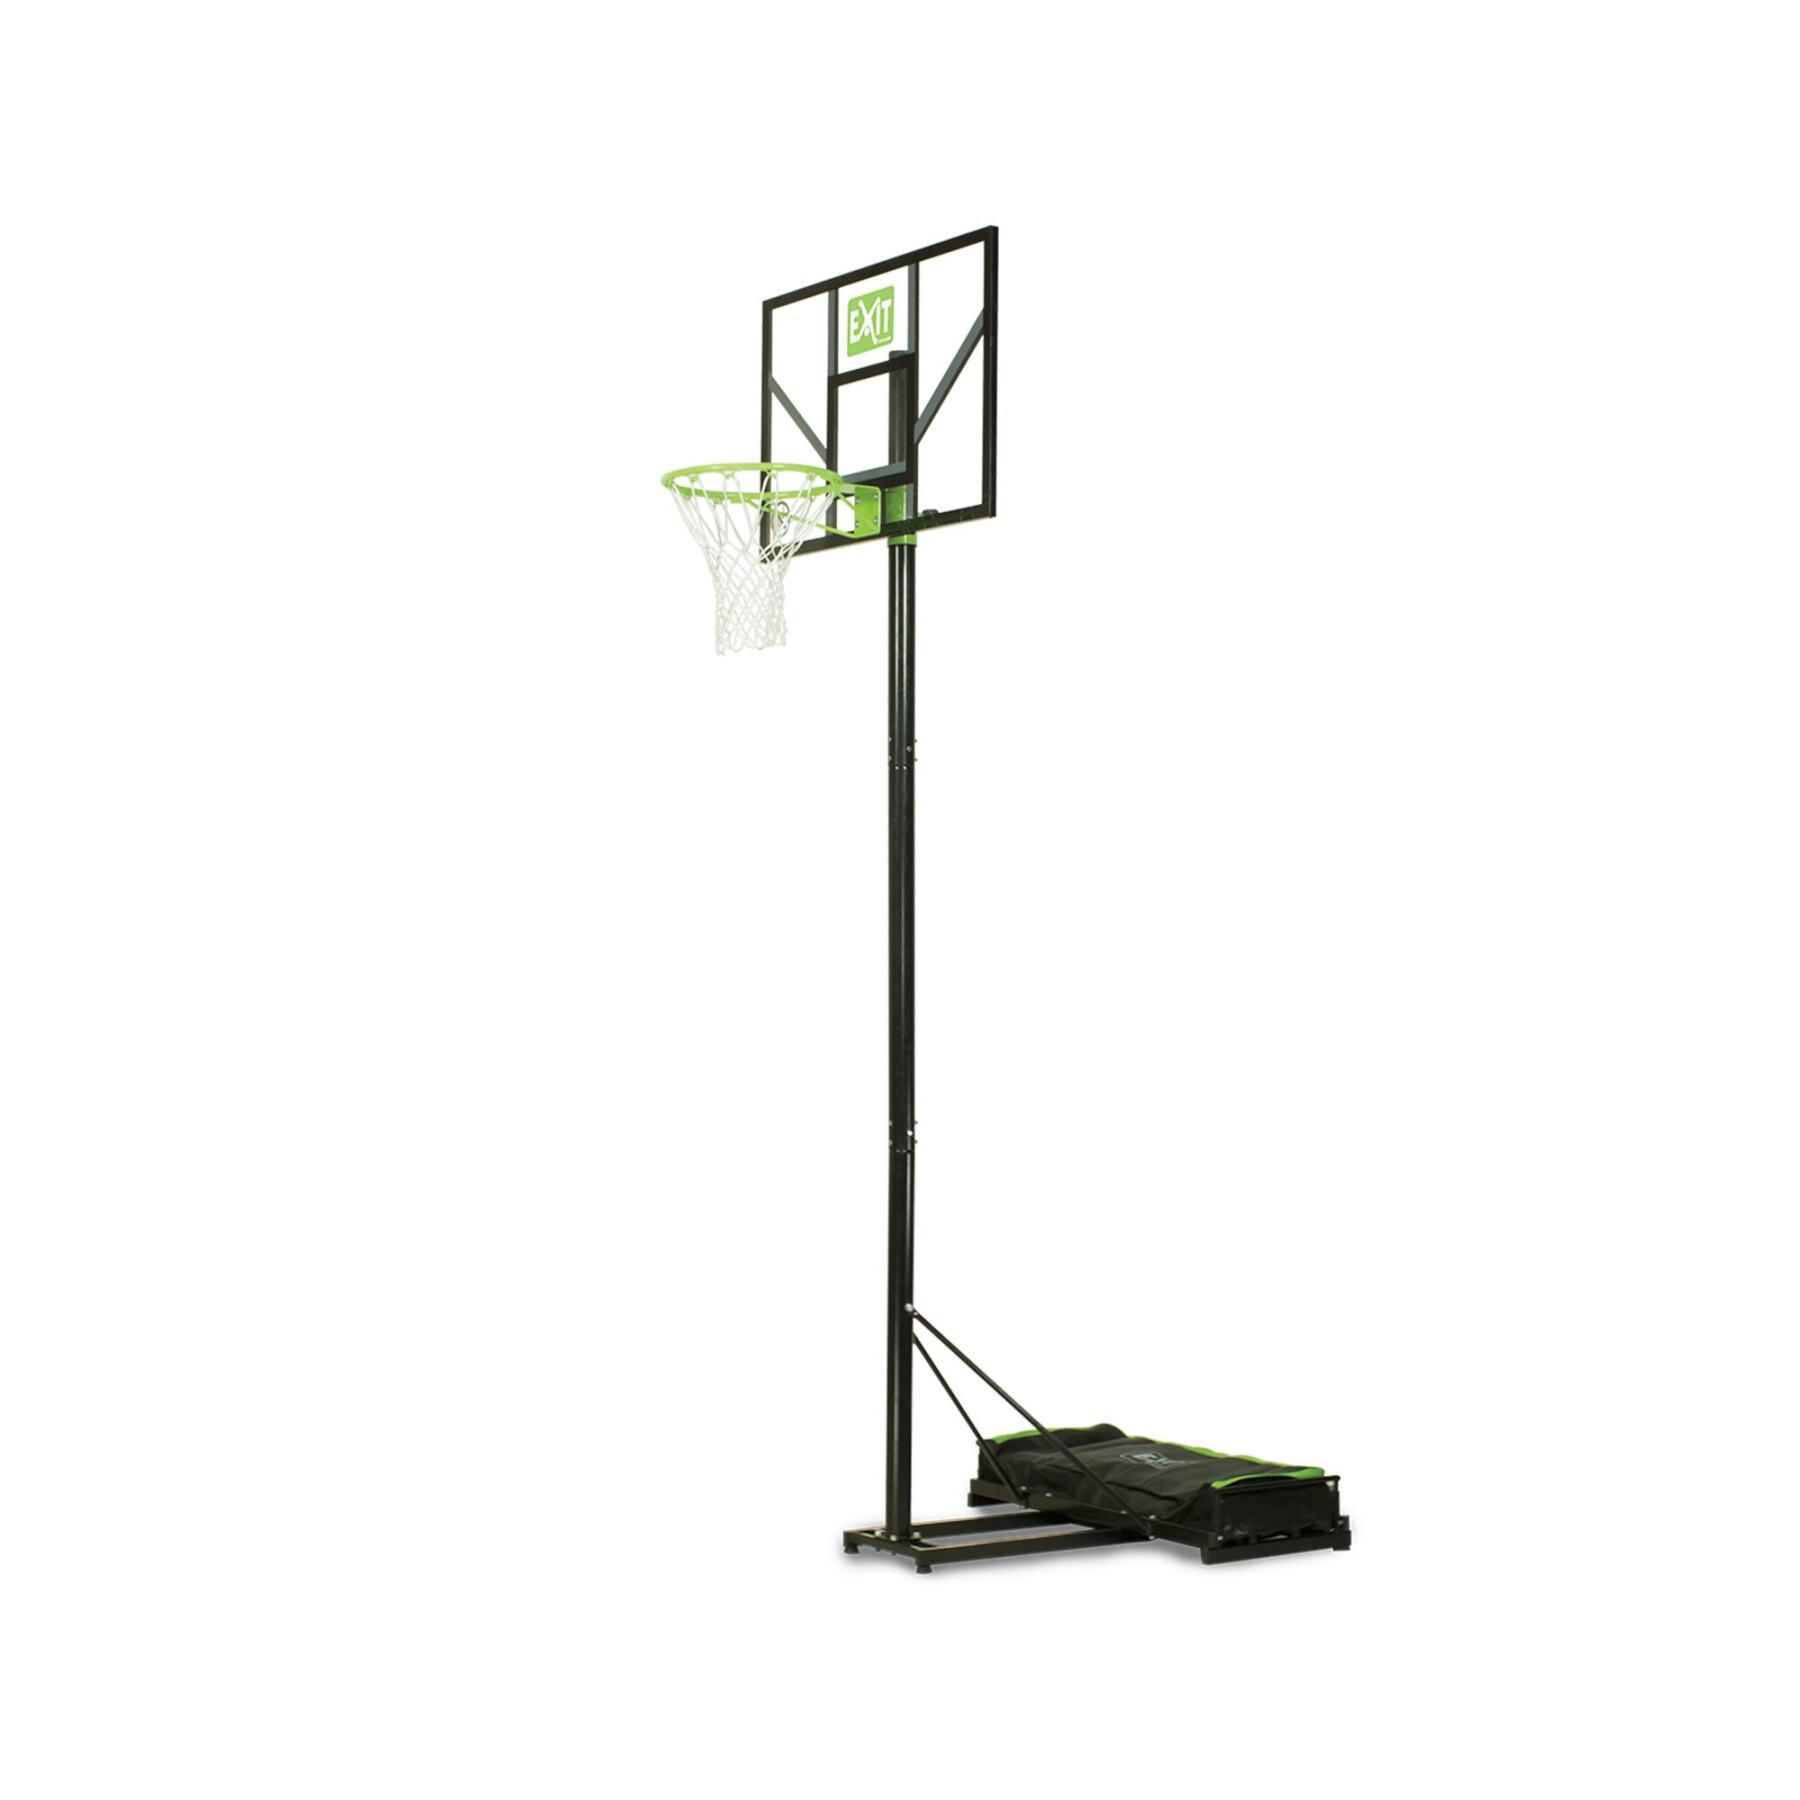 Mobiler Basketballkorb Exit Toys Comet